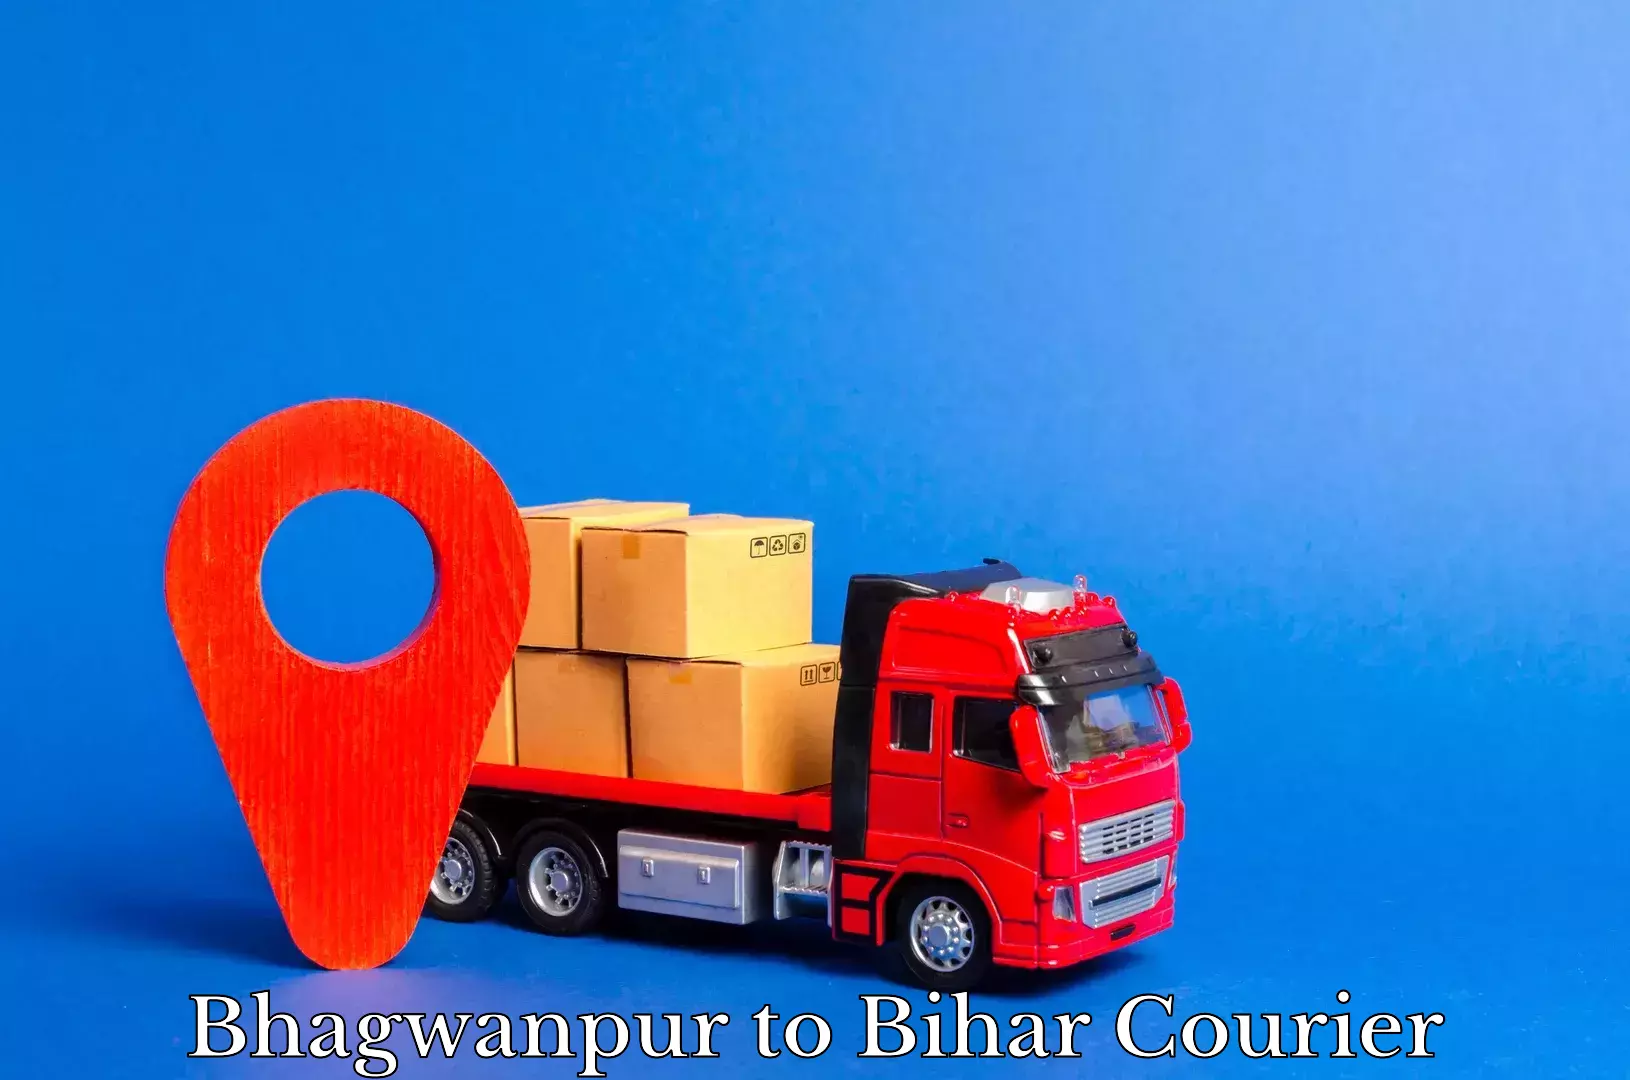 Express logistics in Bhagwanpur to Bihar